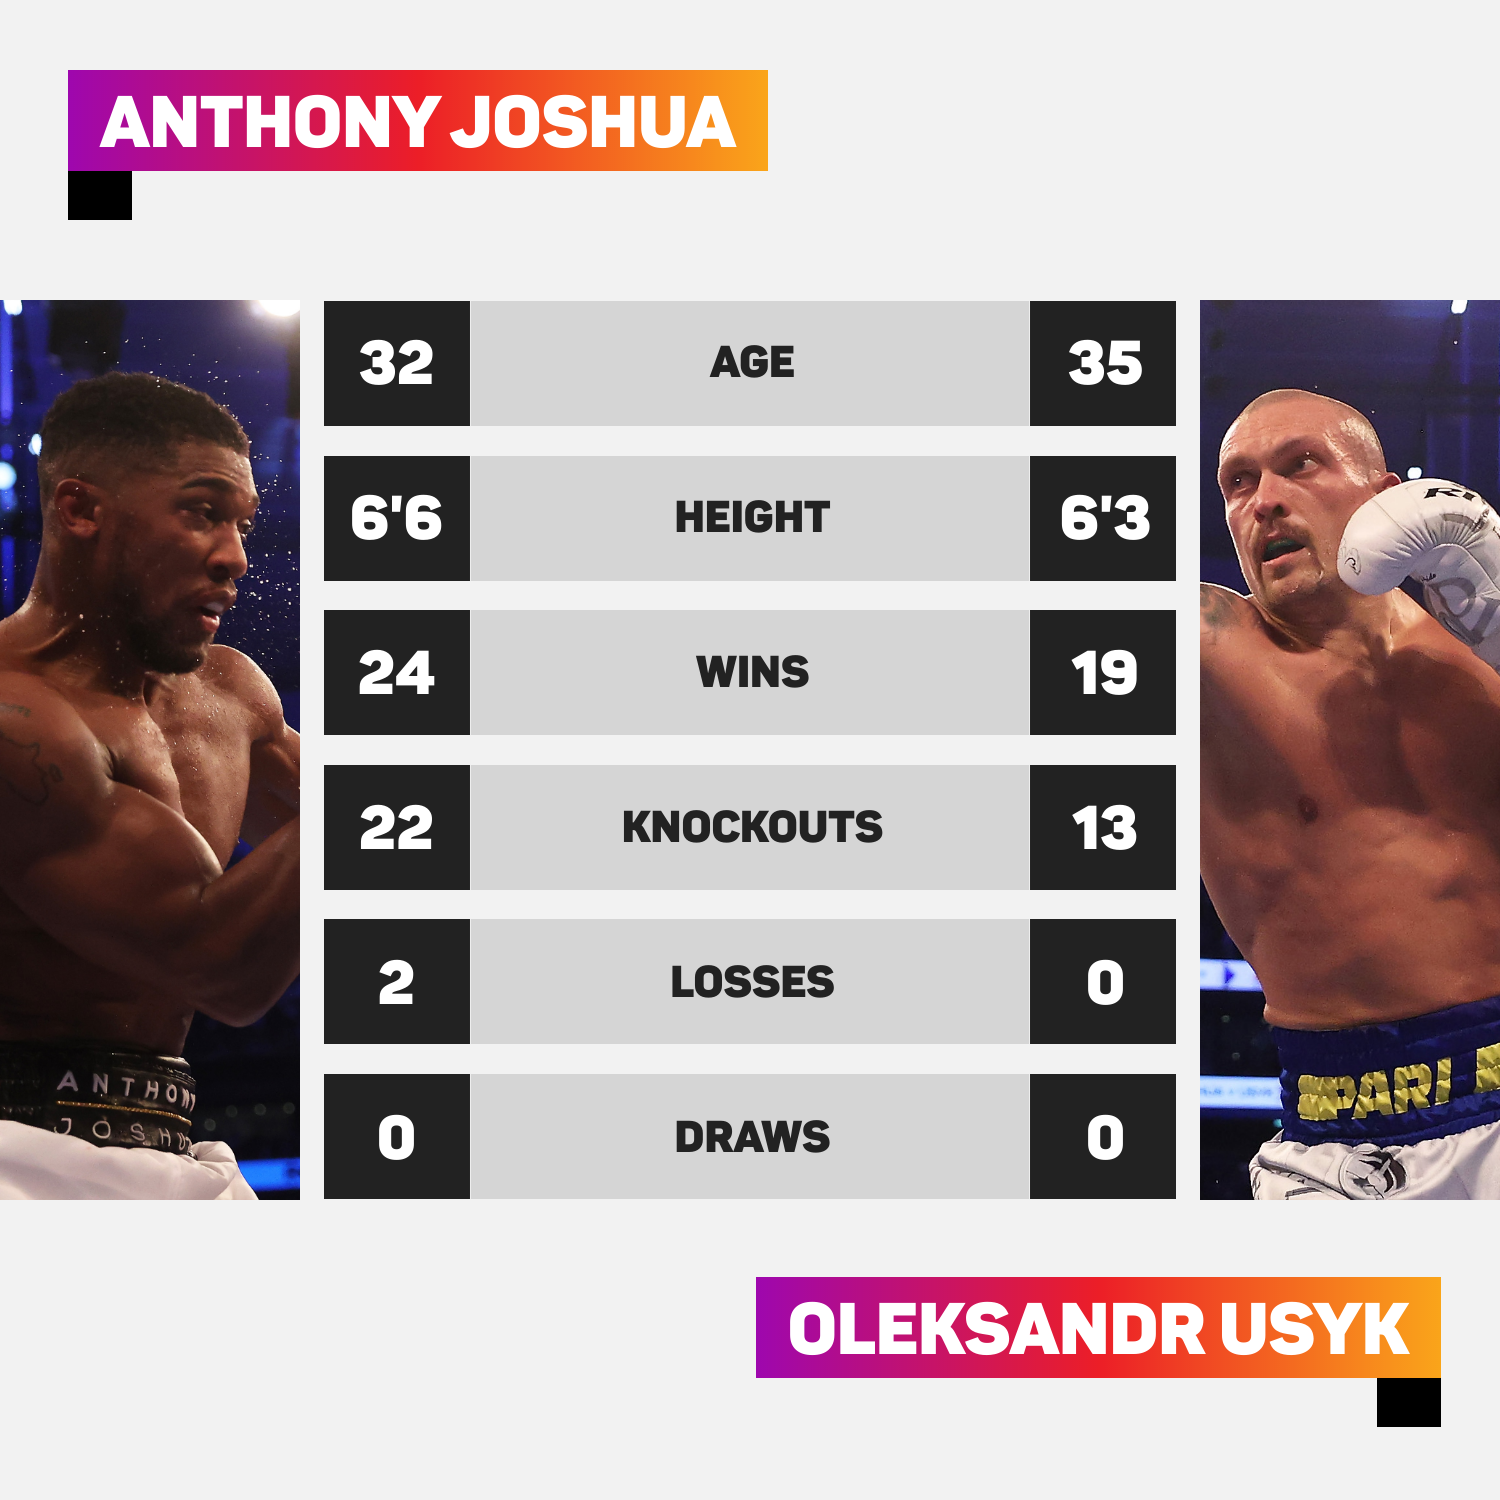 Anthony Joshua vs Oleksandr Usyk head-to-head